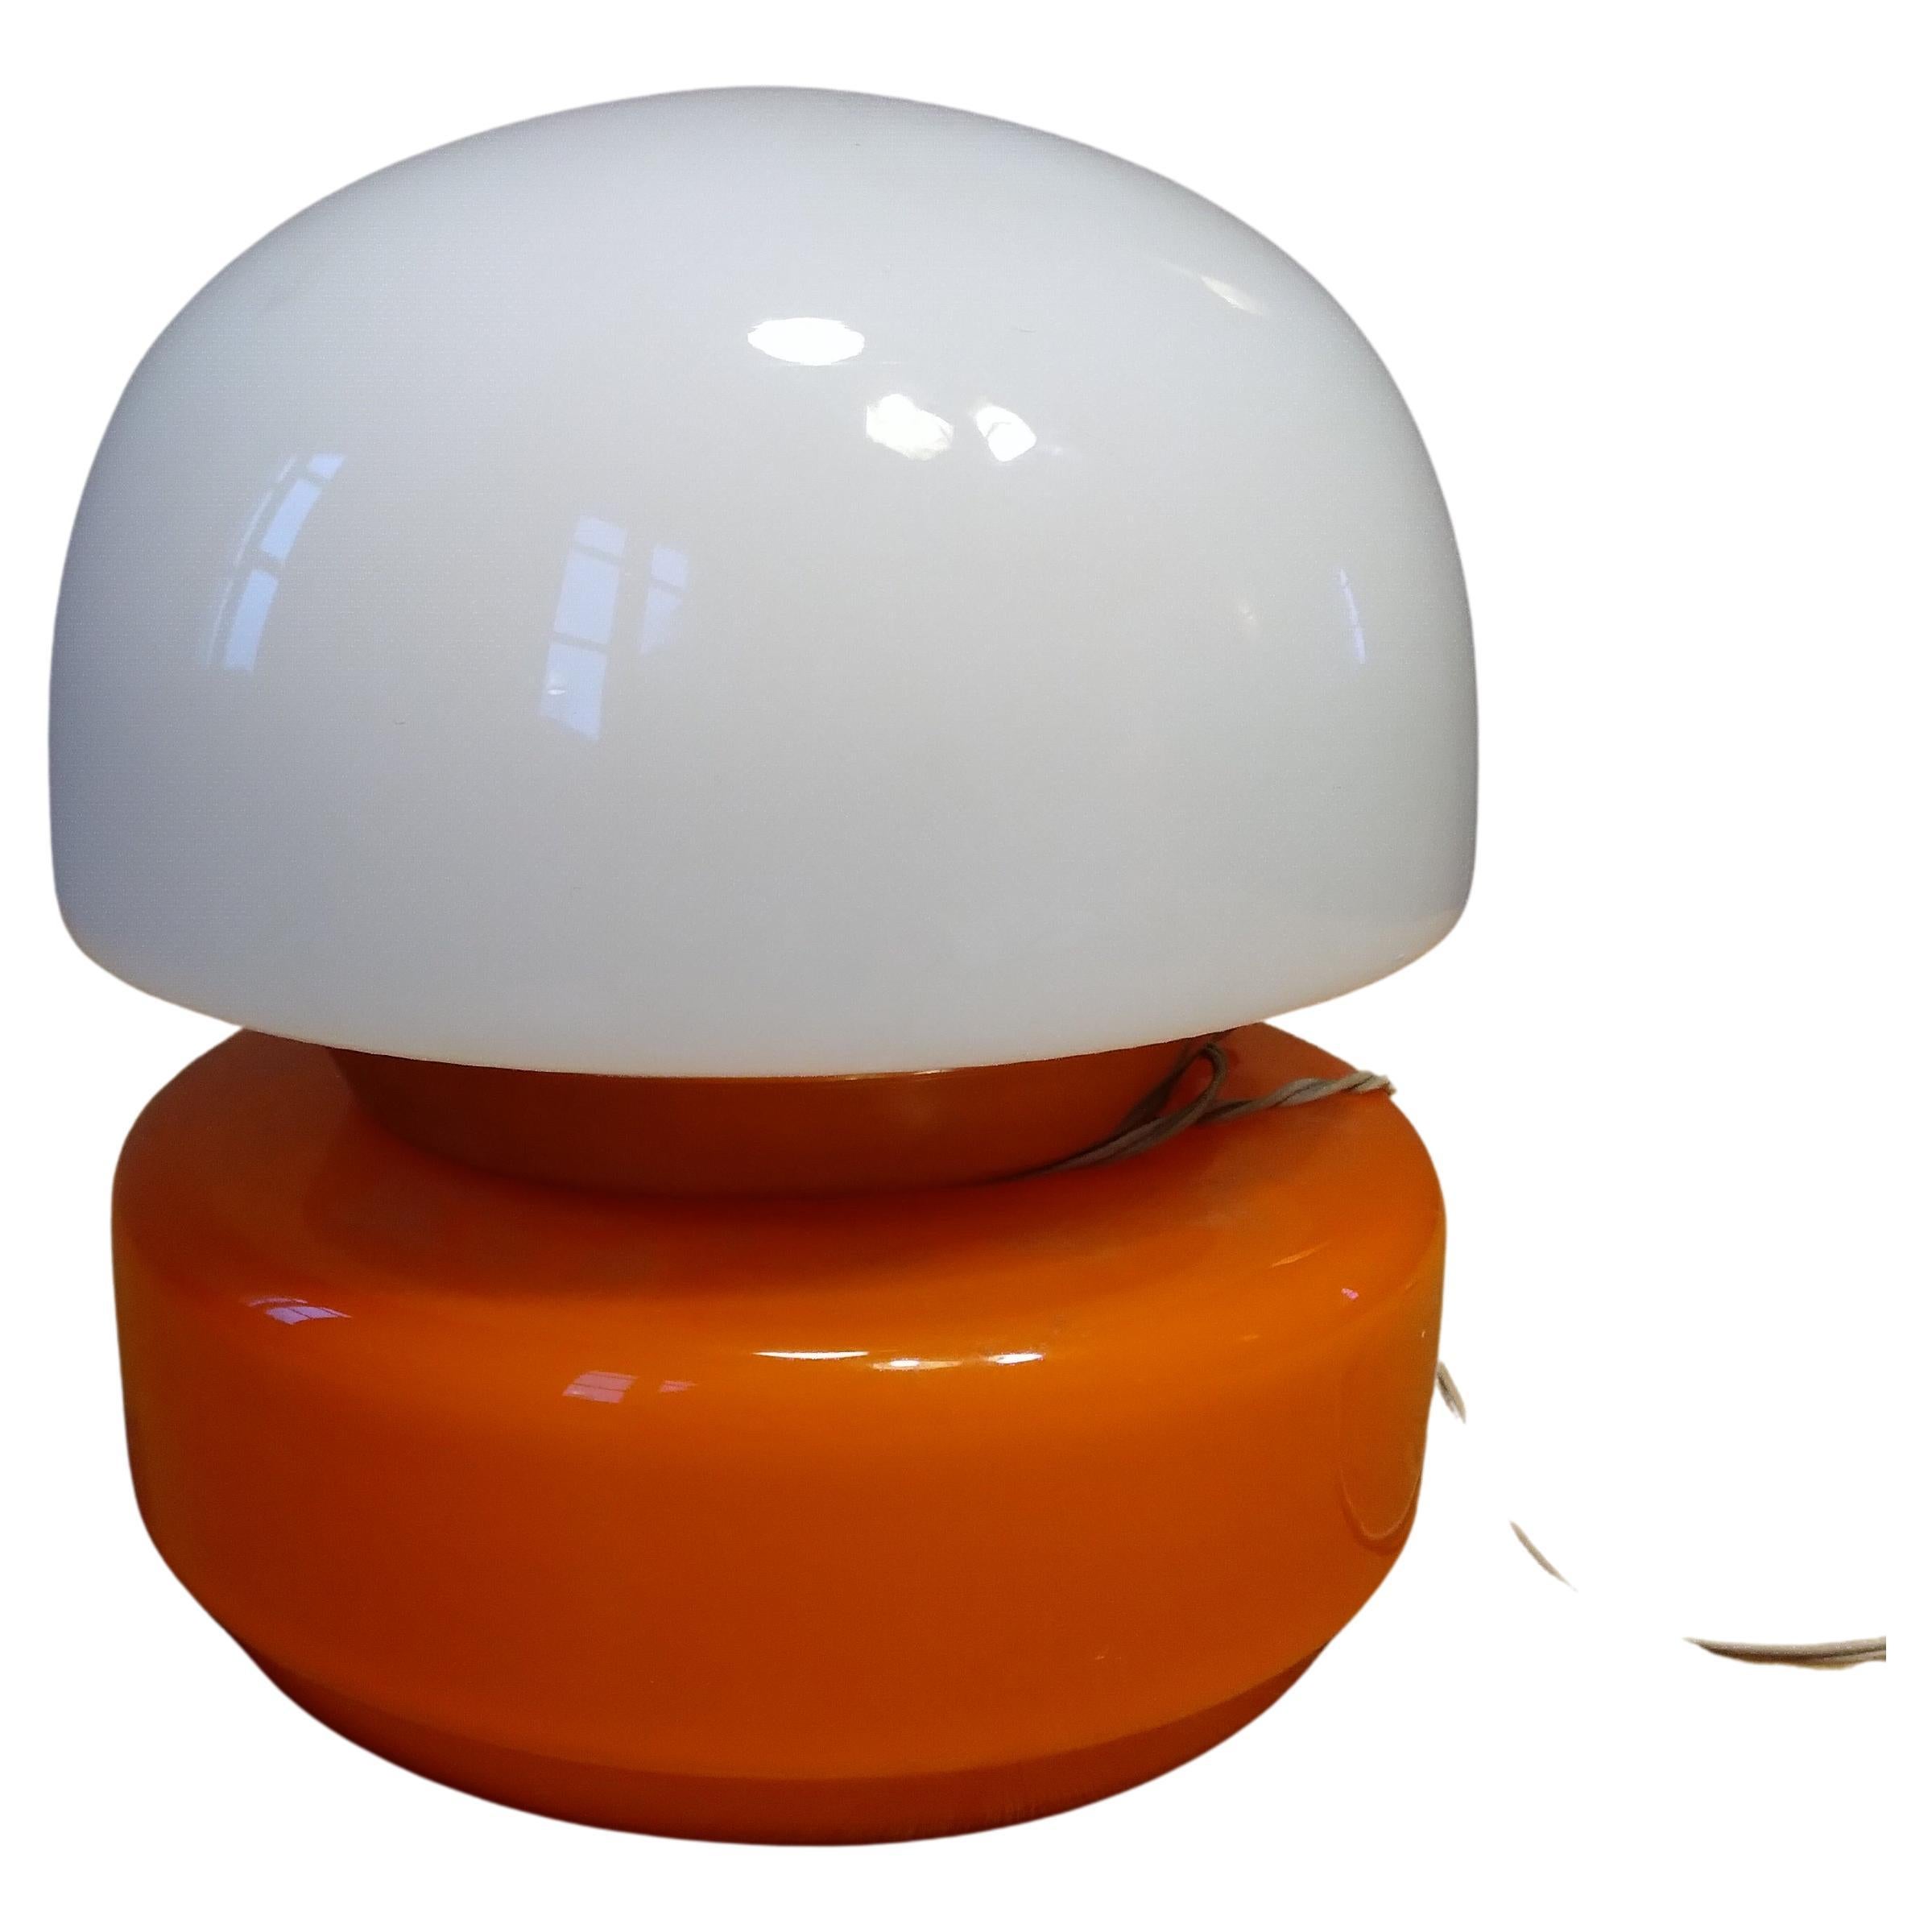 Space Age Tischlampe in Orange und Weiß künstlerischen Glas Italien 1960 .
Fantastische Lampe, tolle Farbe. 